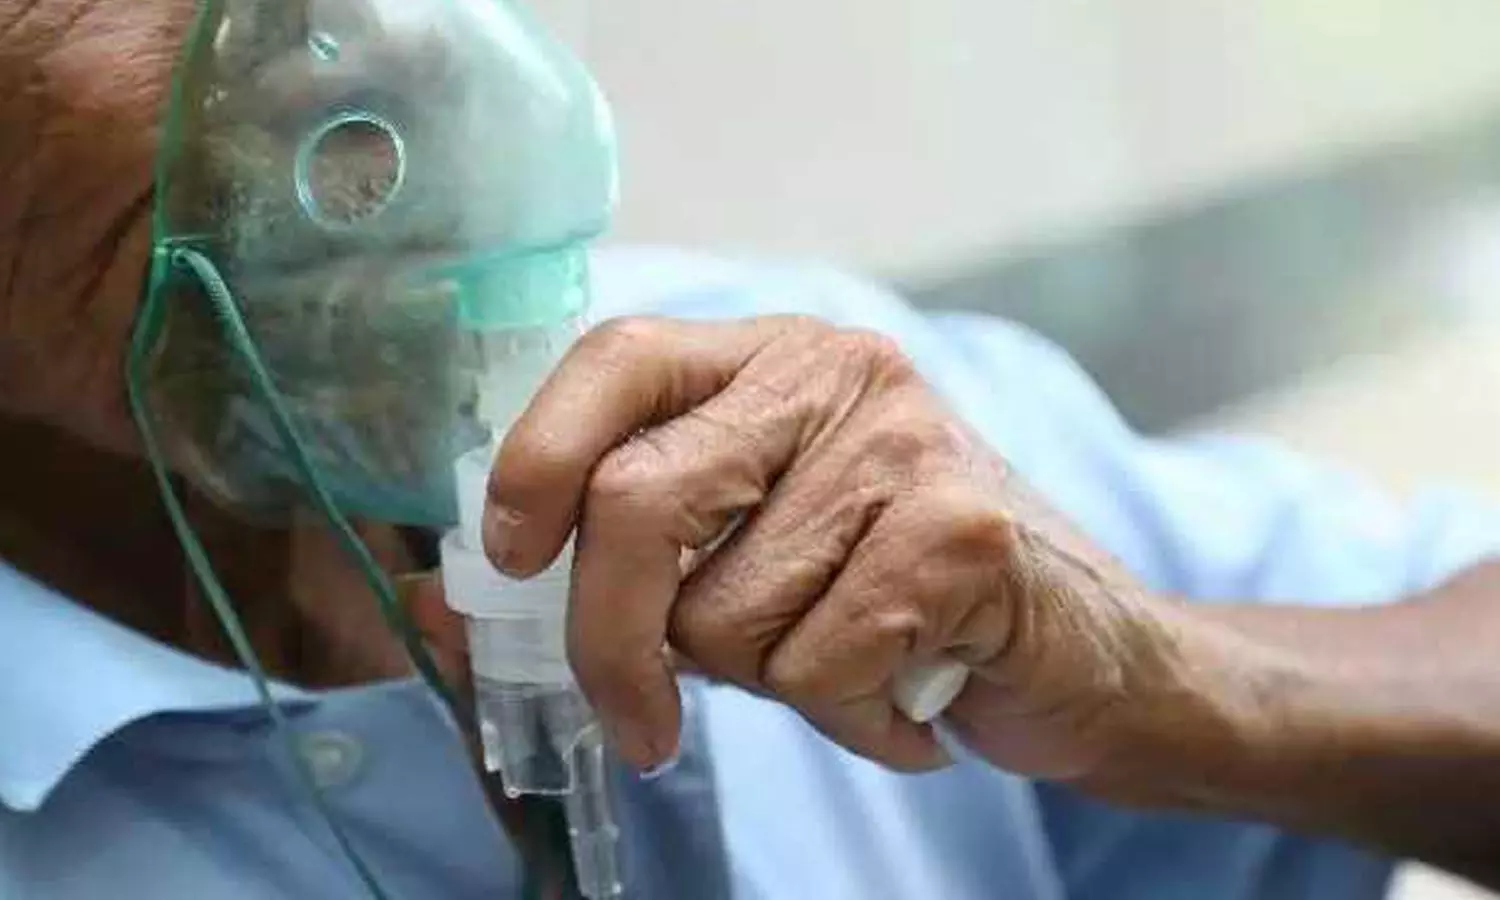 प्रदूषण से हो रही मौतें! रोगियों के फेफड़े हुए काले, COPD और अस्थमा अटैक का खतरा बढ़ा